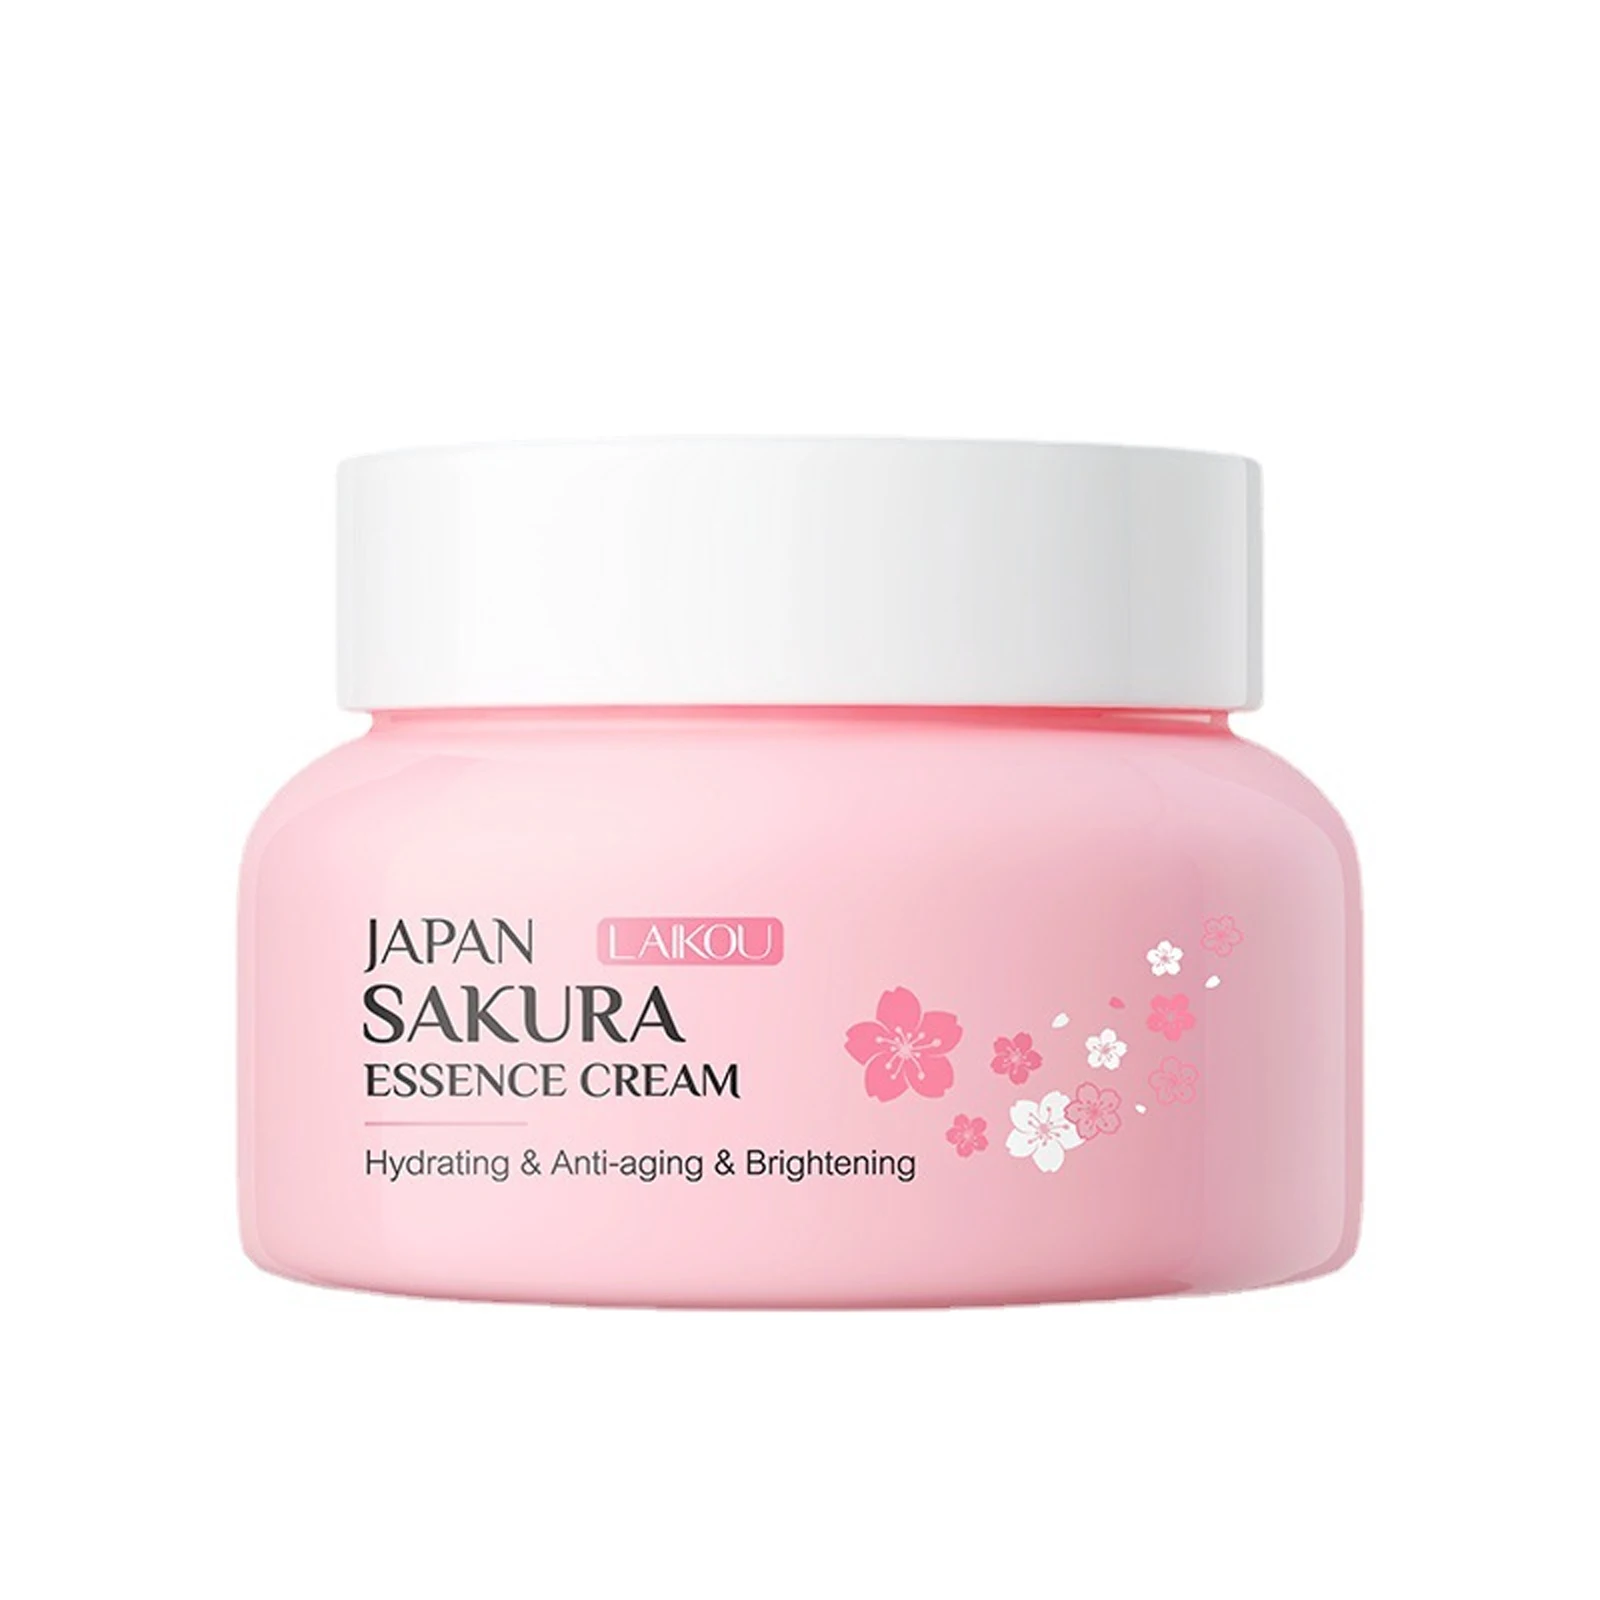 

LAIKOU Sakura Essence Face Cream Whitening Brightening Moisturizing Firming Repairing Anti Wrinkle Oil Pores Skin Care 60g